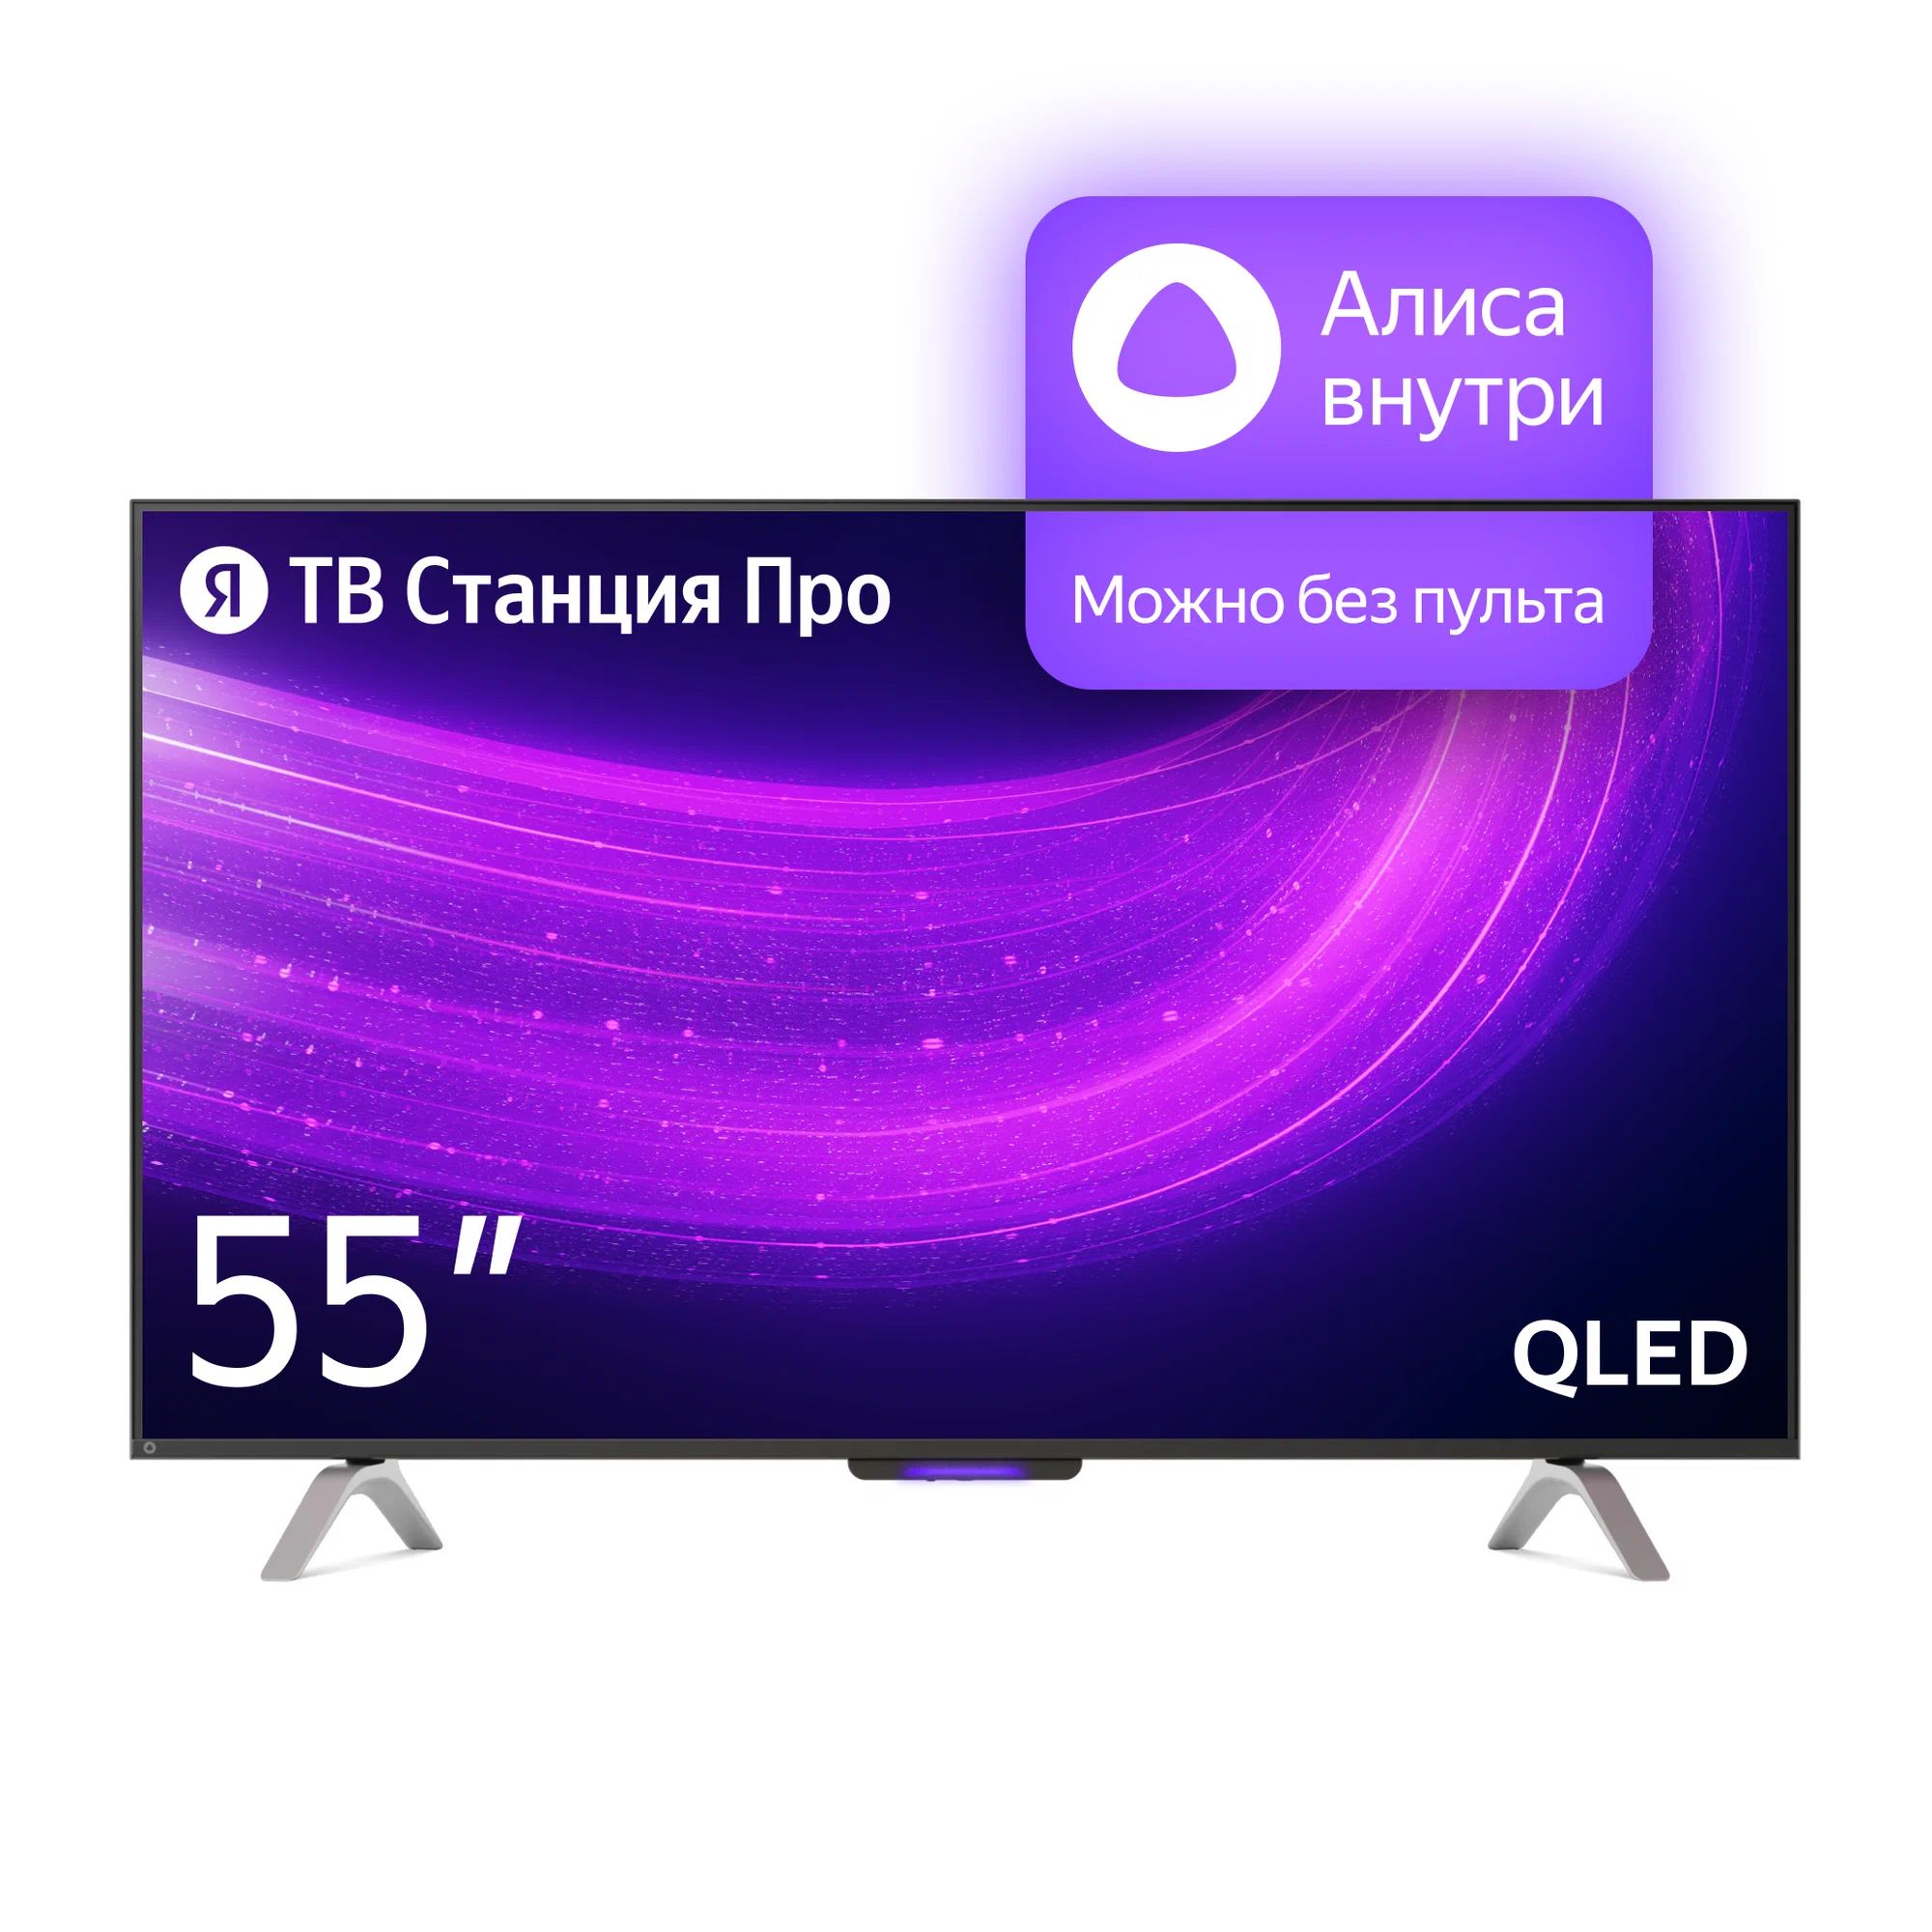 Телевизор Яндекс YNDX-00101 PRO Тв станция с Алисой 55